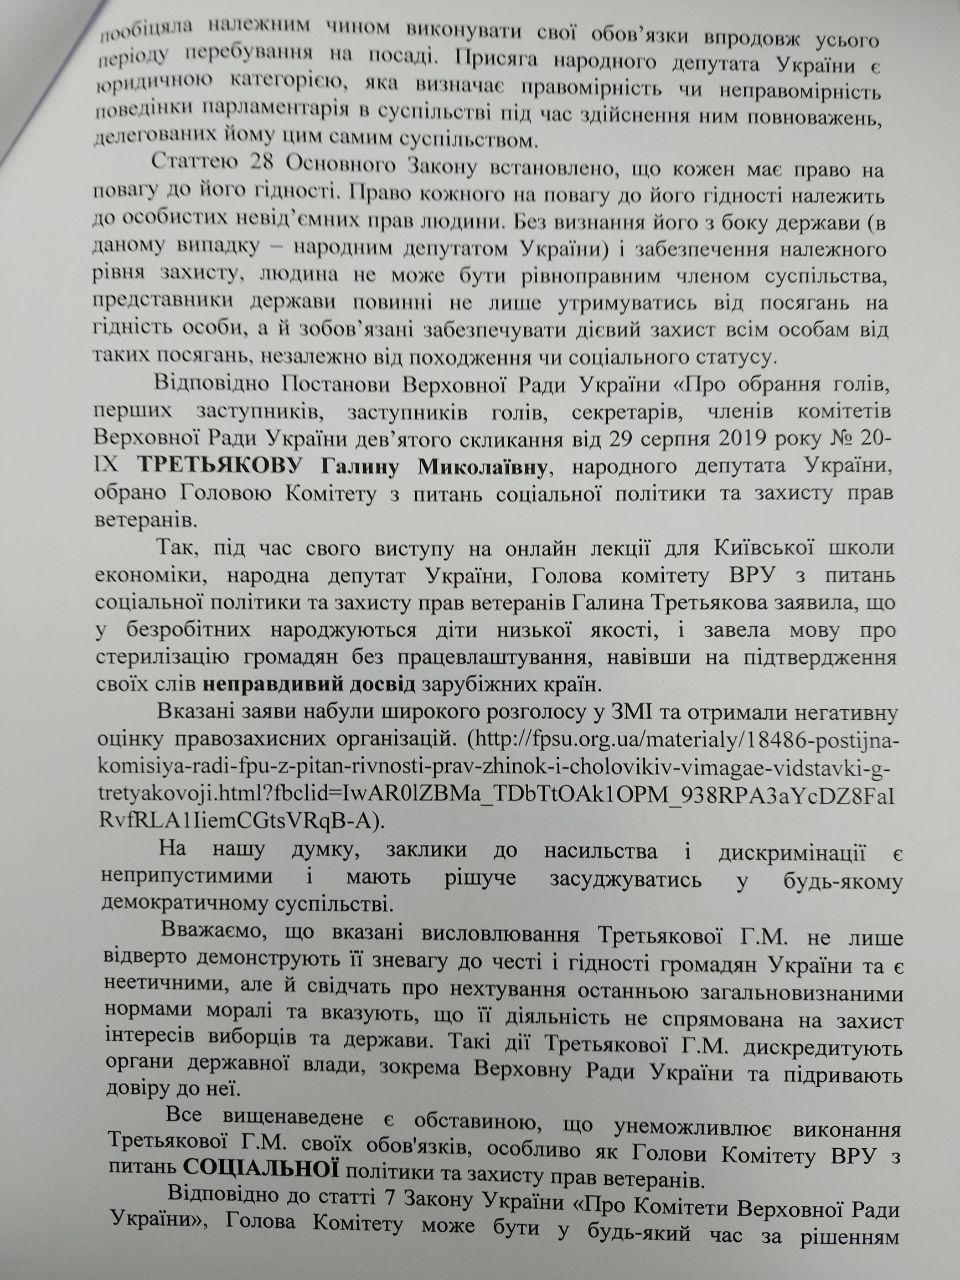 Обращение депутатов к Дмитрию Разумкова о снятии с должности Галины Третьяковой